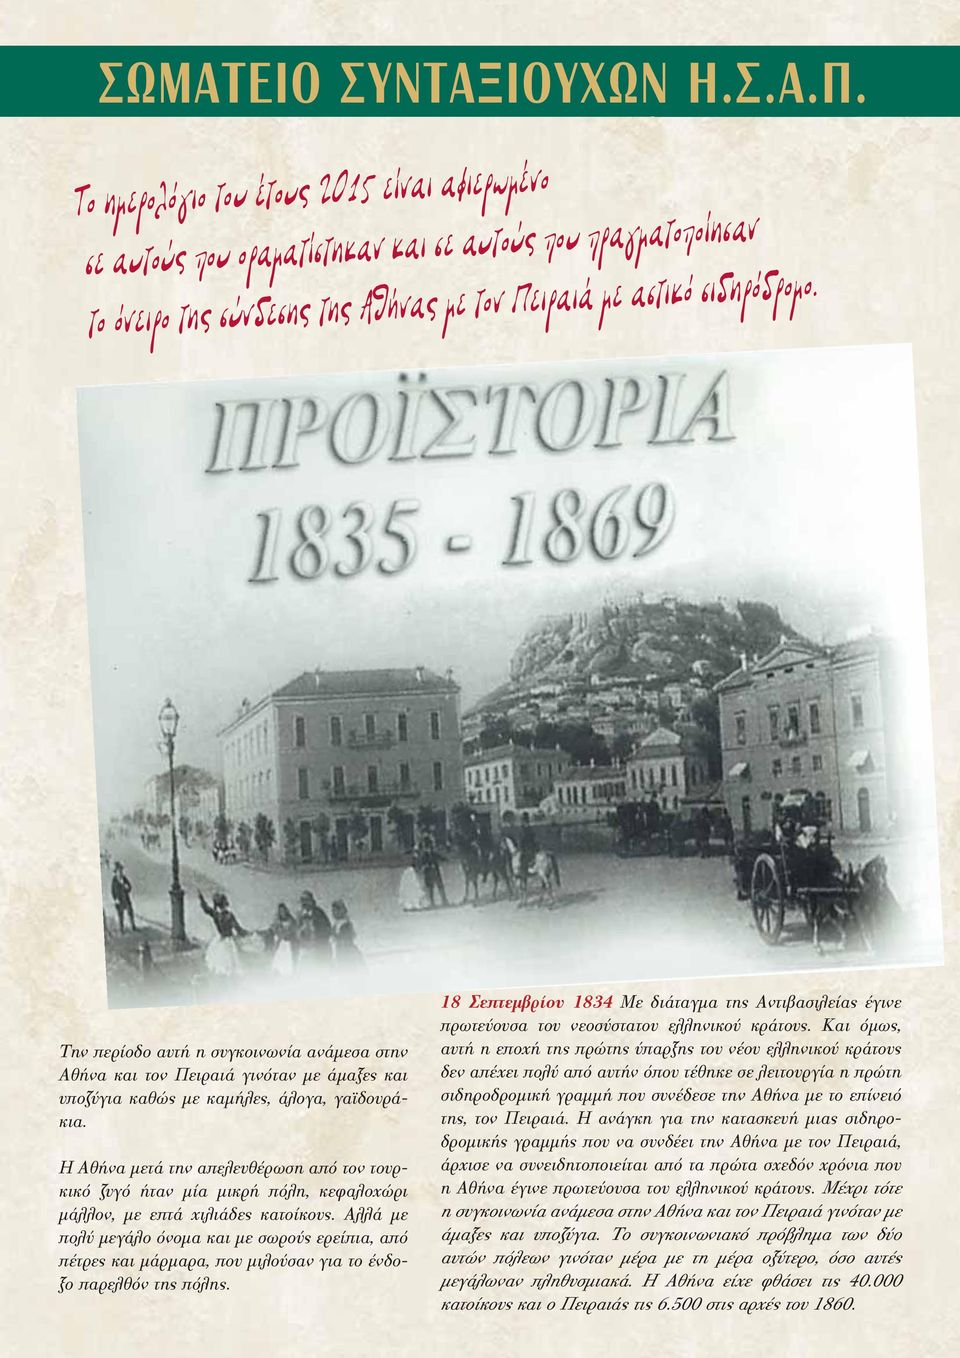 Η Αθήνα μετά την απελευθέρωση από τον τουρκικό ζυγό ήταν μία μικρή πόλη, κεφαλοχώρι μάλλον, με επτά χιλιάδες κατοίκους.